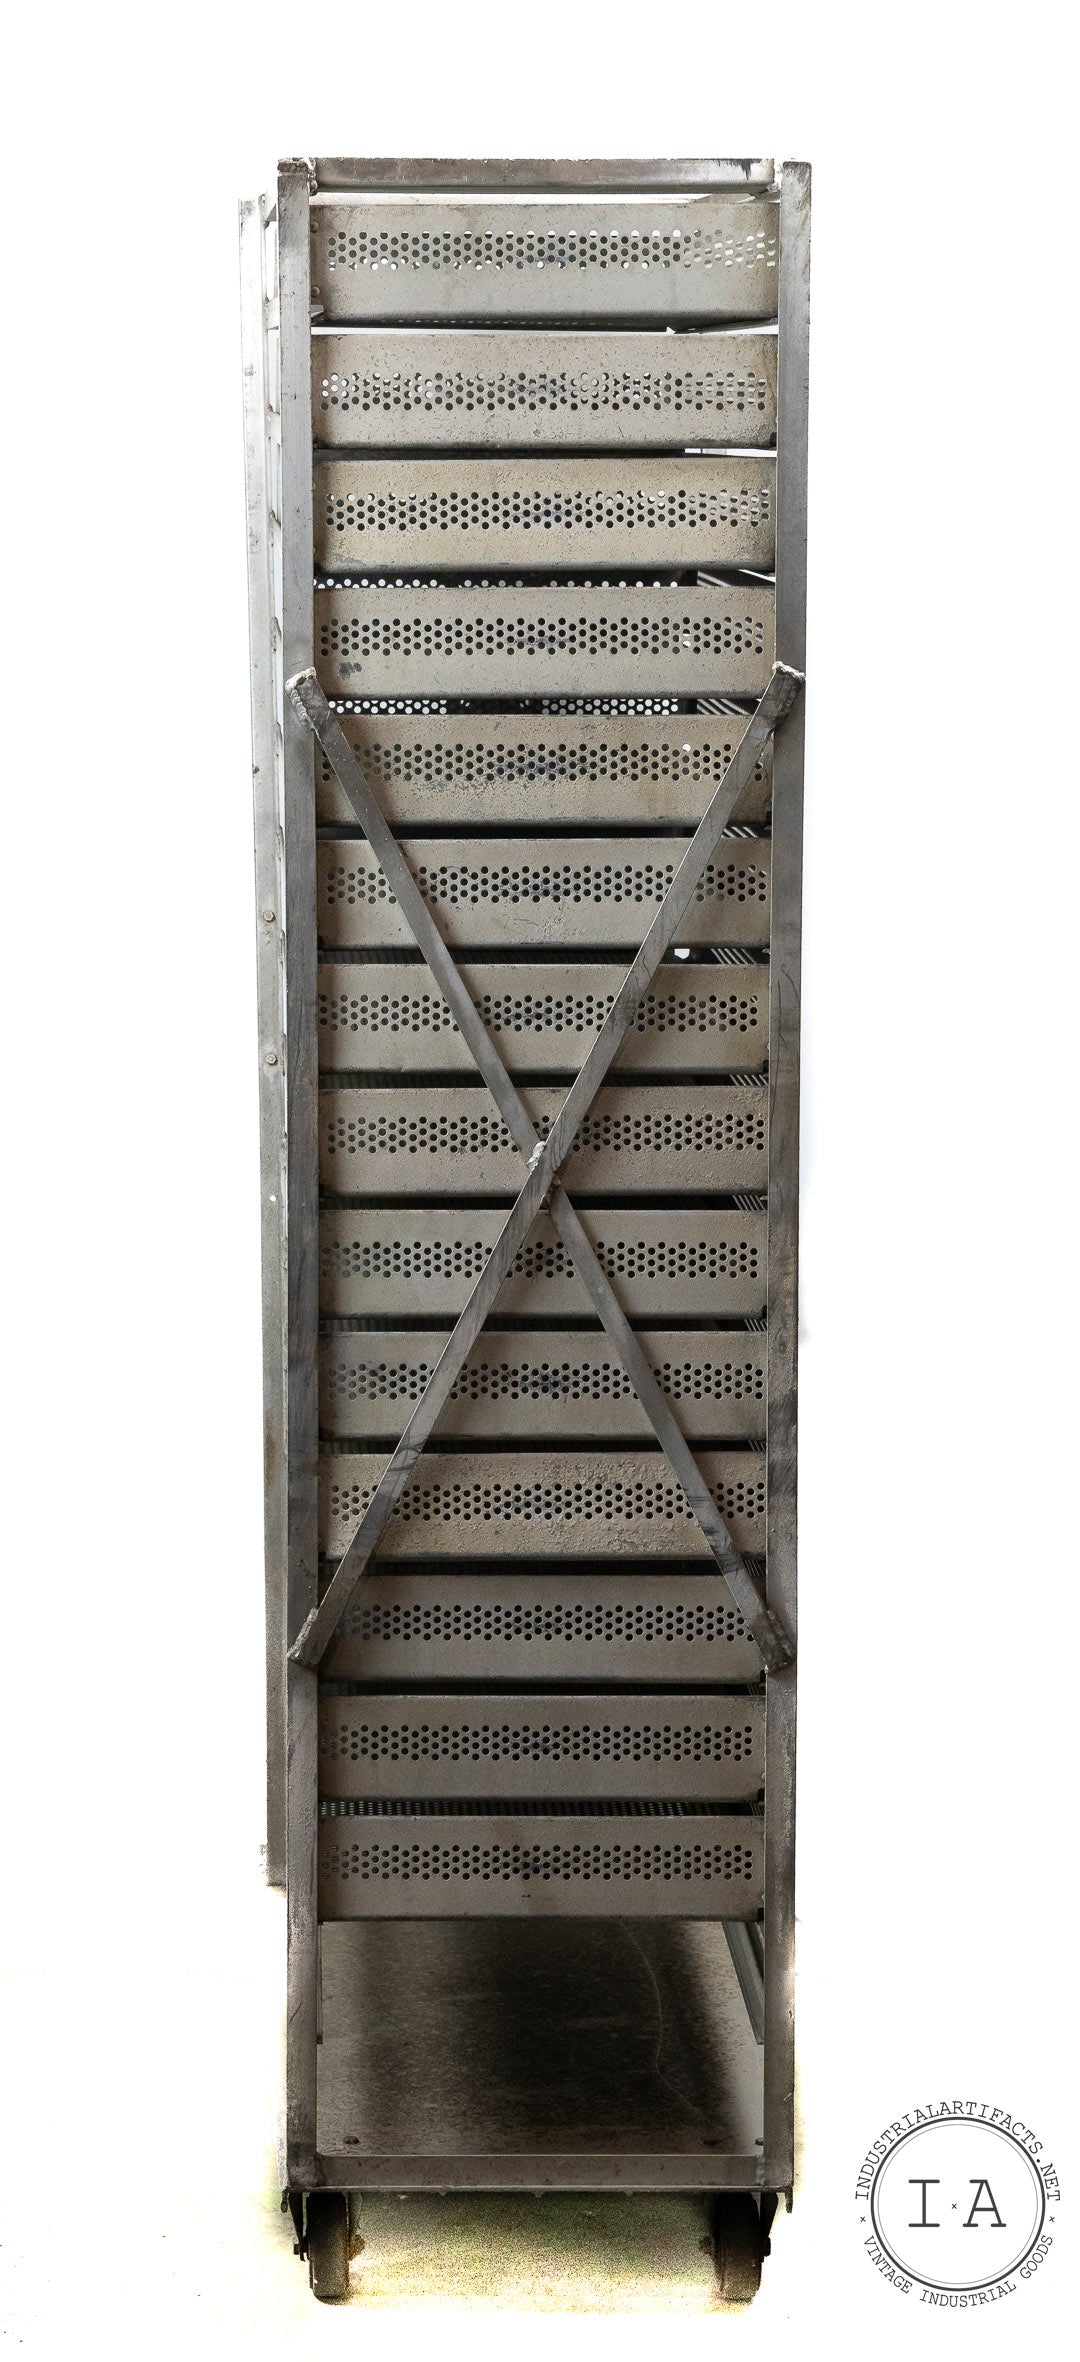 C. 1940 15 Drawer Aluminum Incubator Cabinet